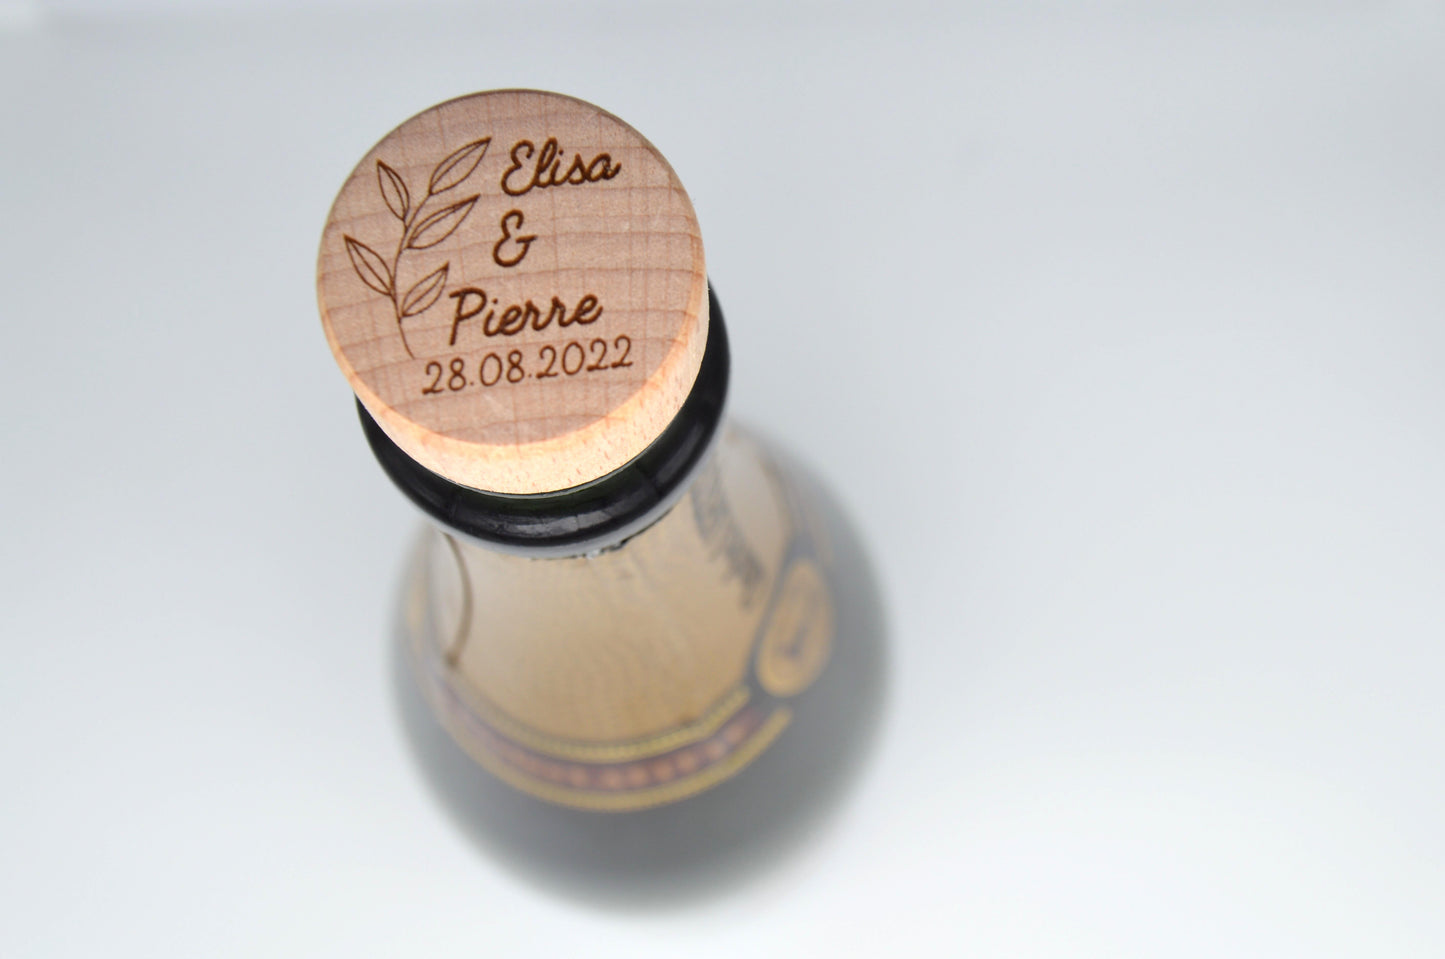 Bouchon de vin ou champagne personnalisé avec pop-up card